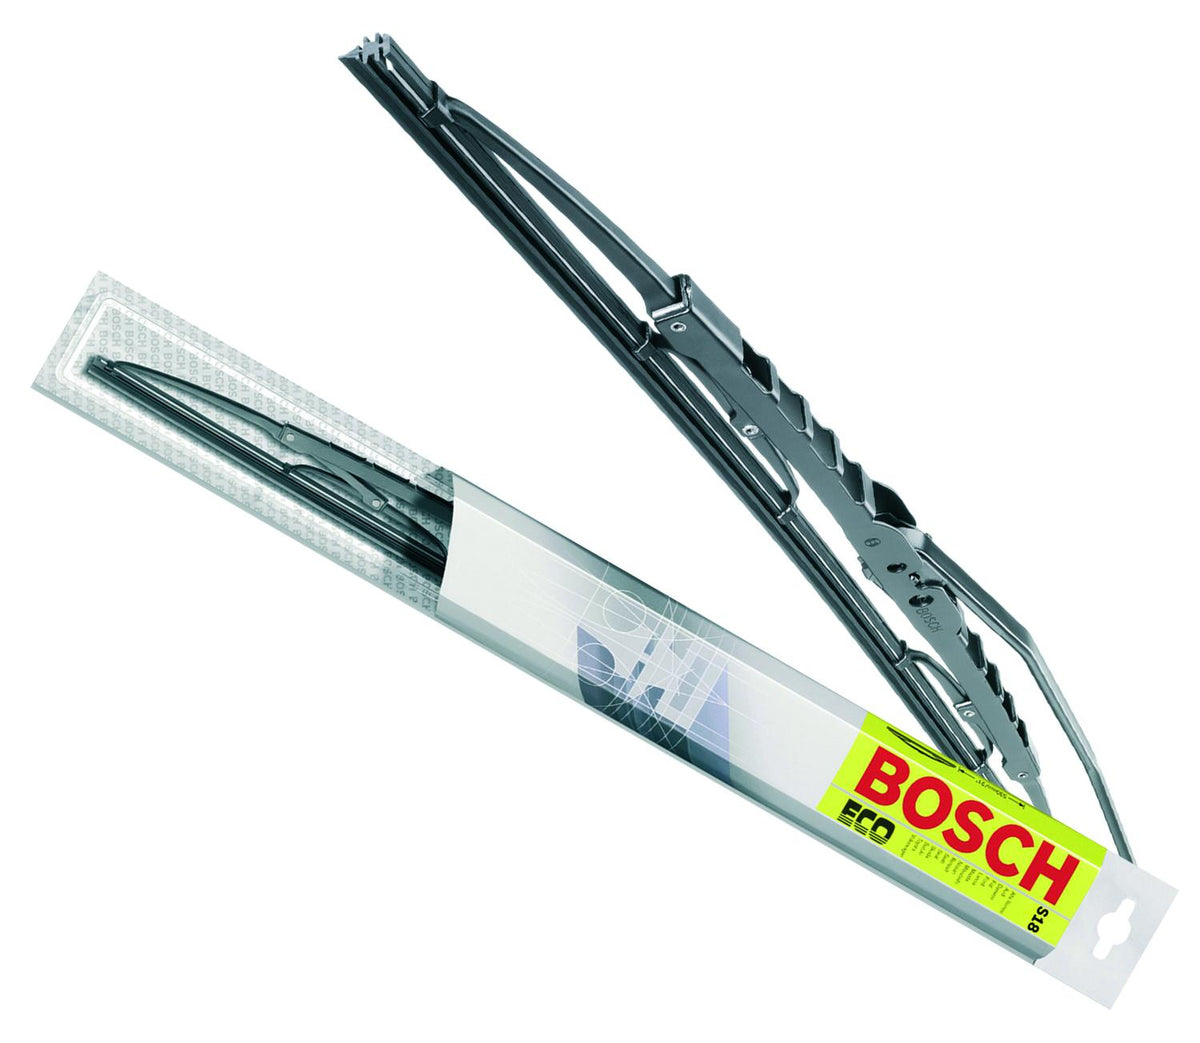 Limpiaparabrisas Bosch Eco Recto 19”- 1 Unidad - 906368